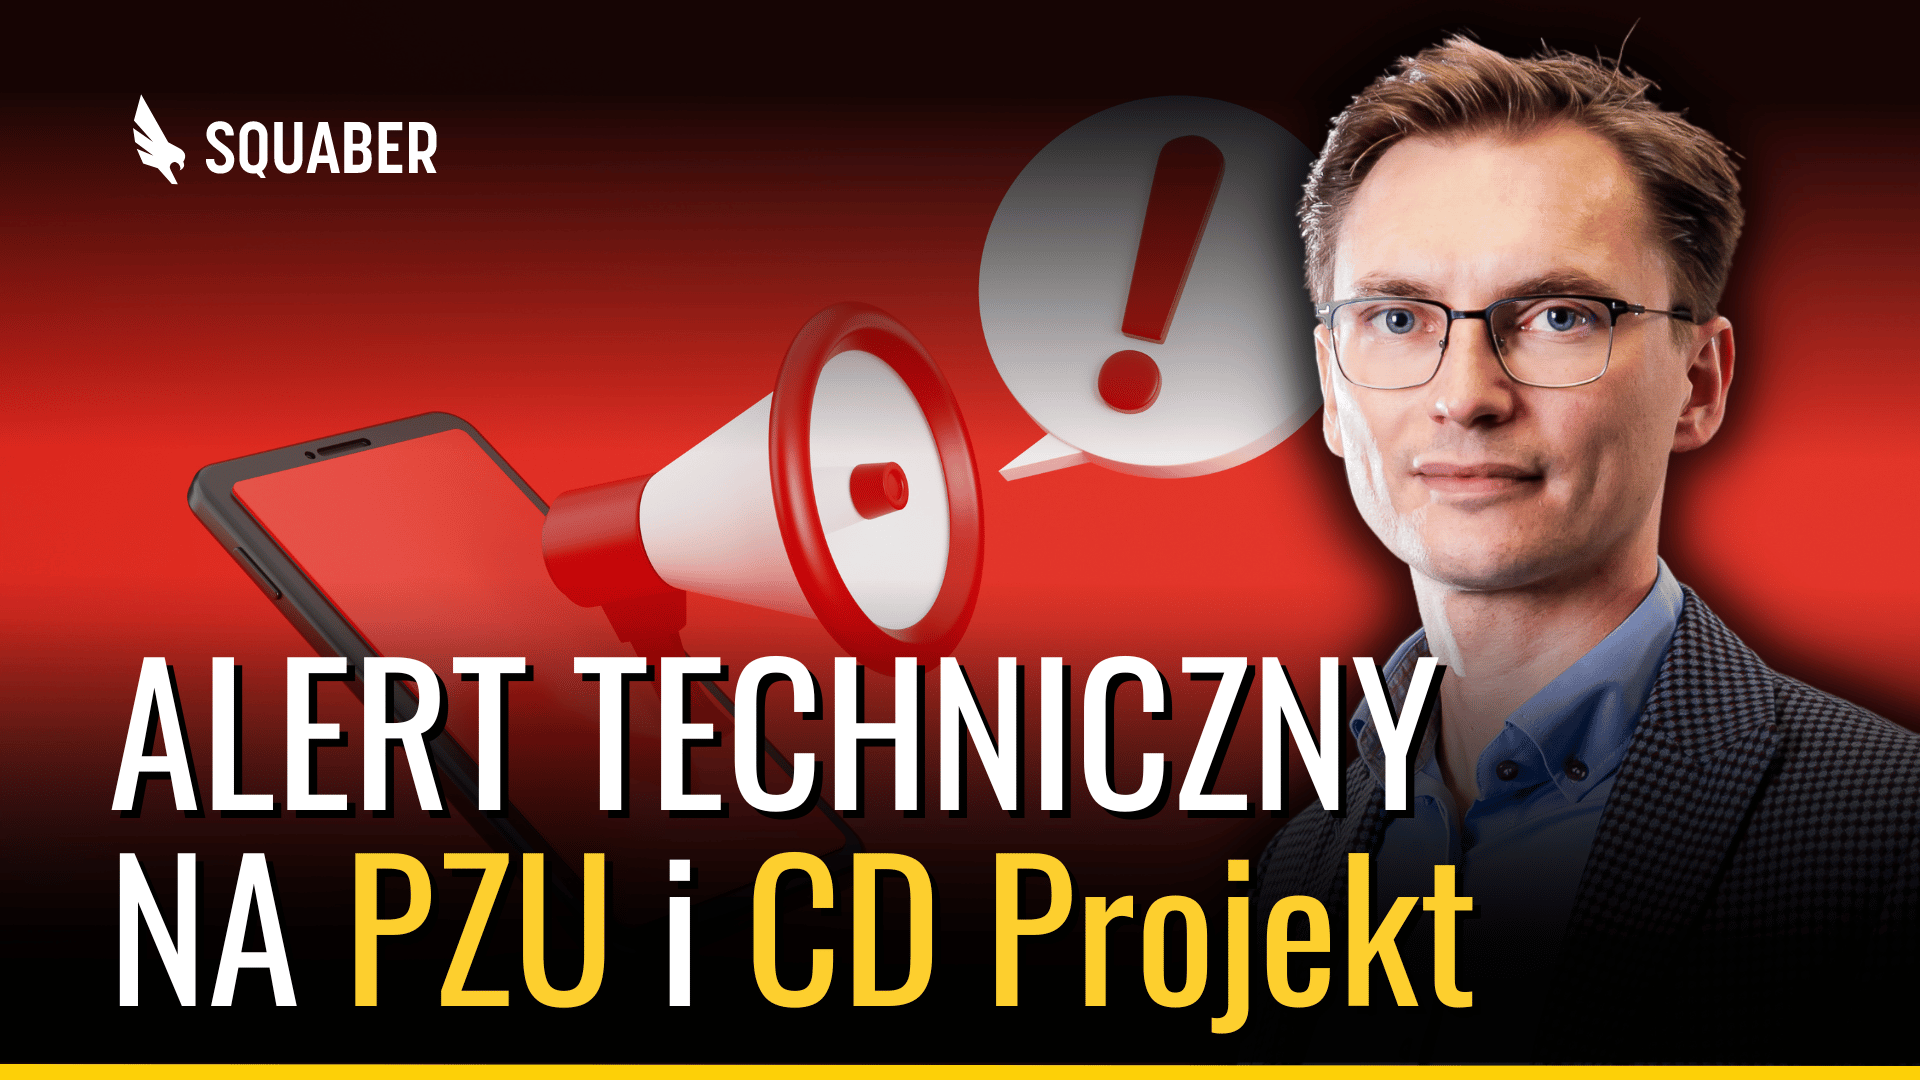 Sygnał spadkowy na PZU. Czy CD Projekt oraz Cyfrowy Polsat to okazje? Analiza spółek WIG20